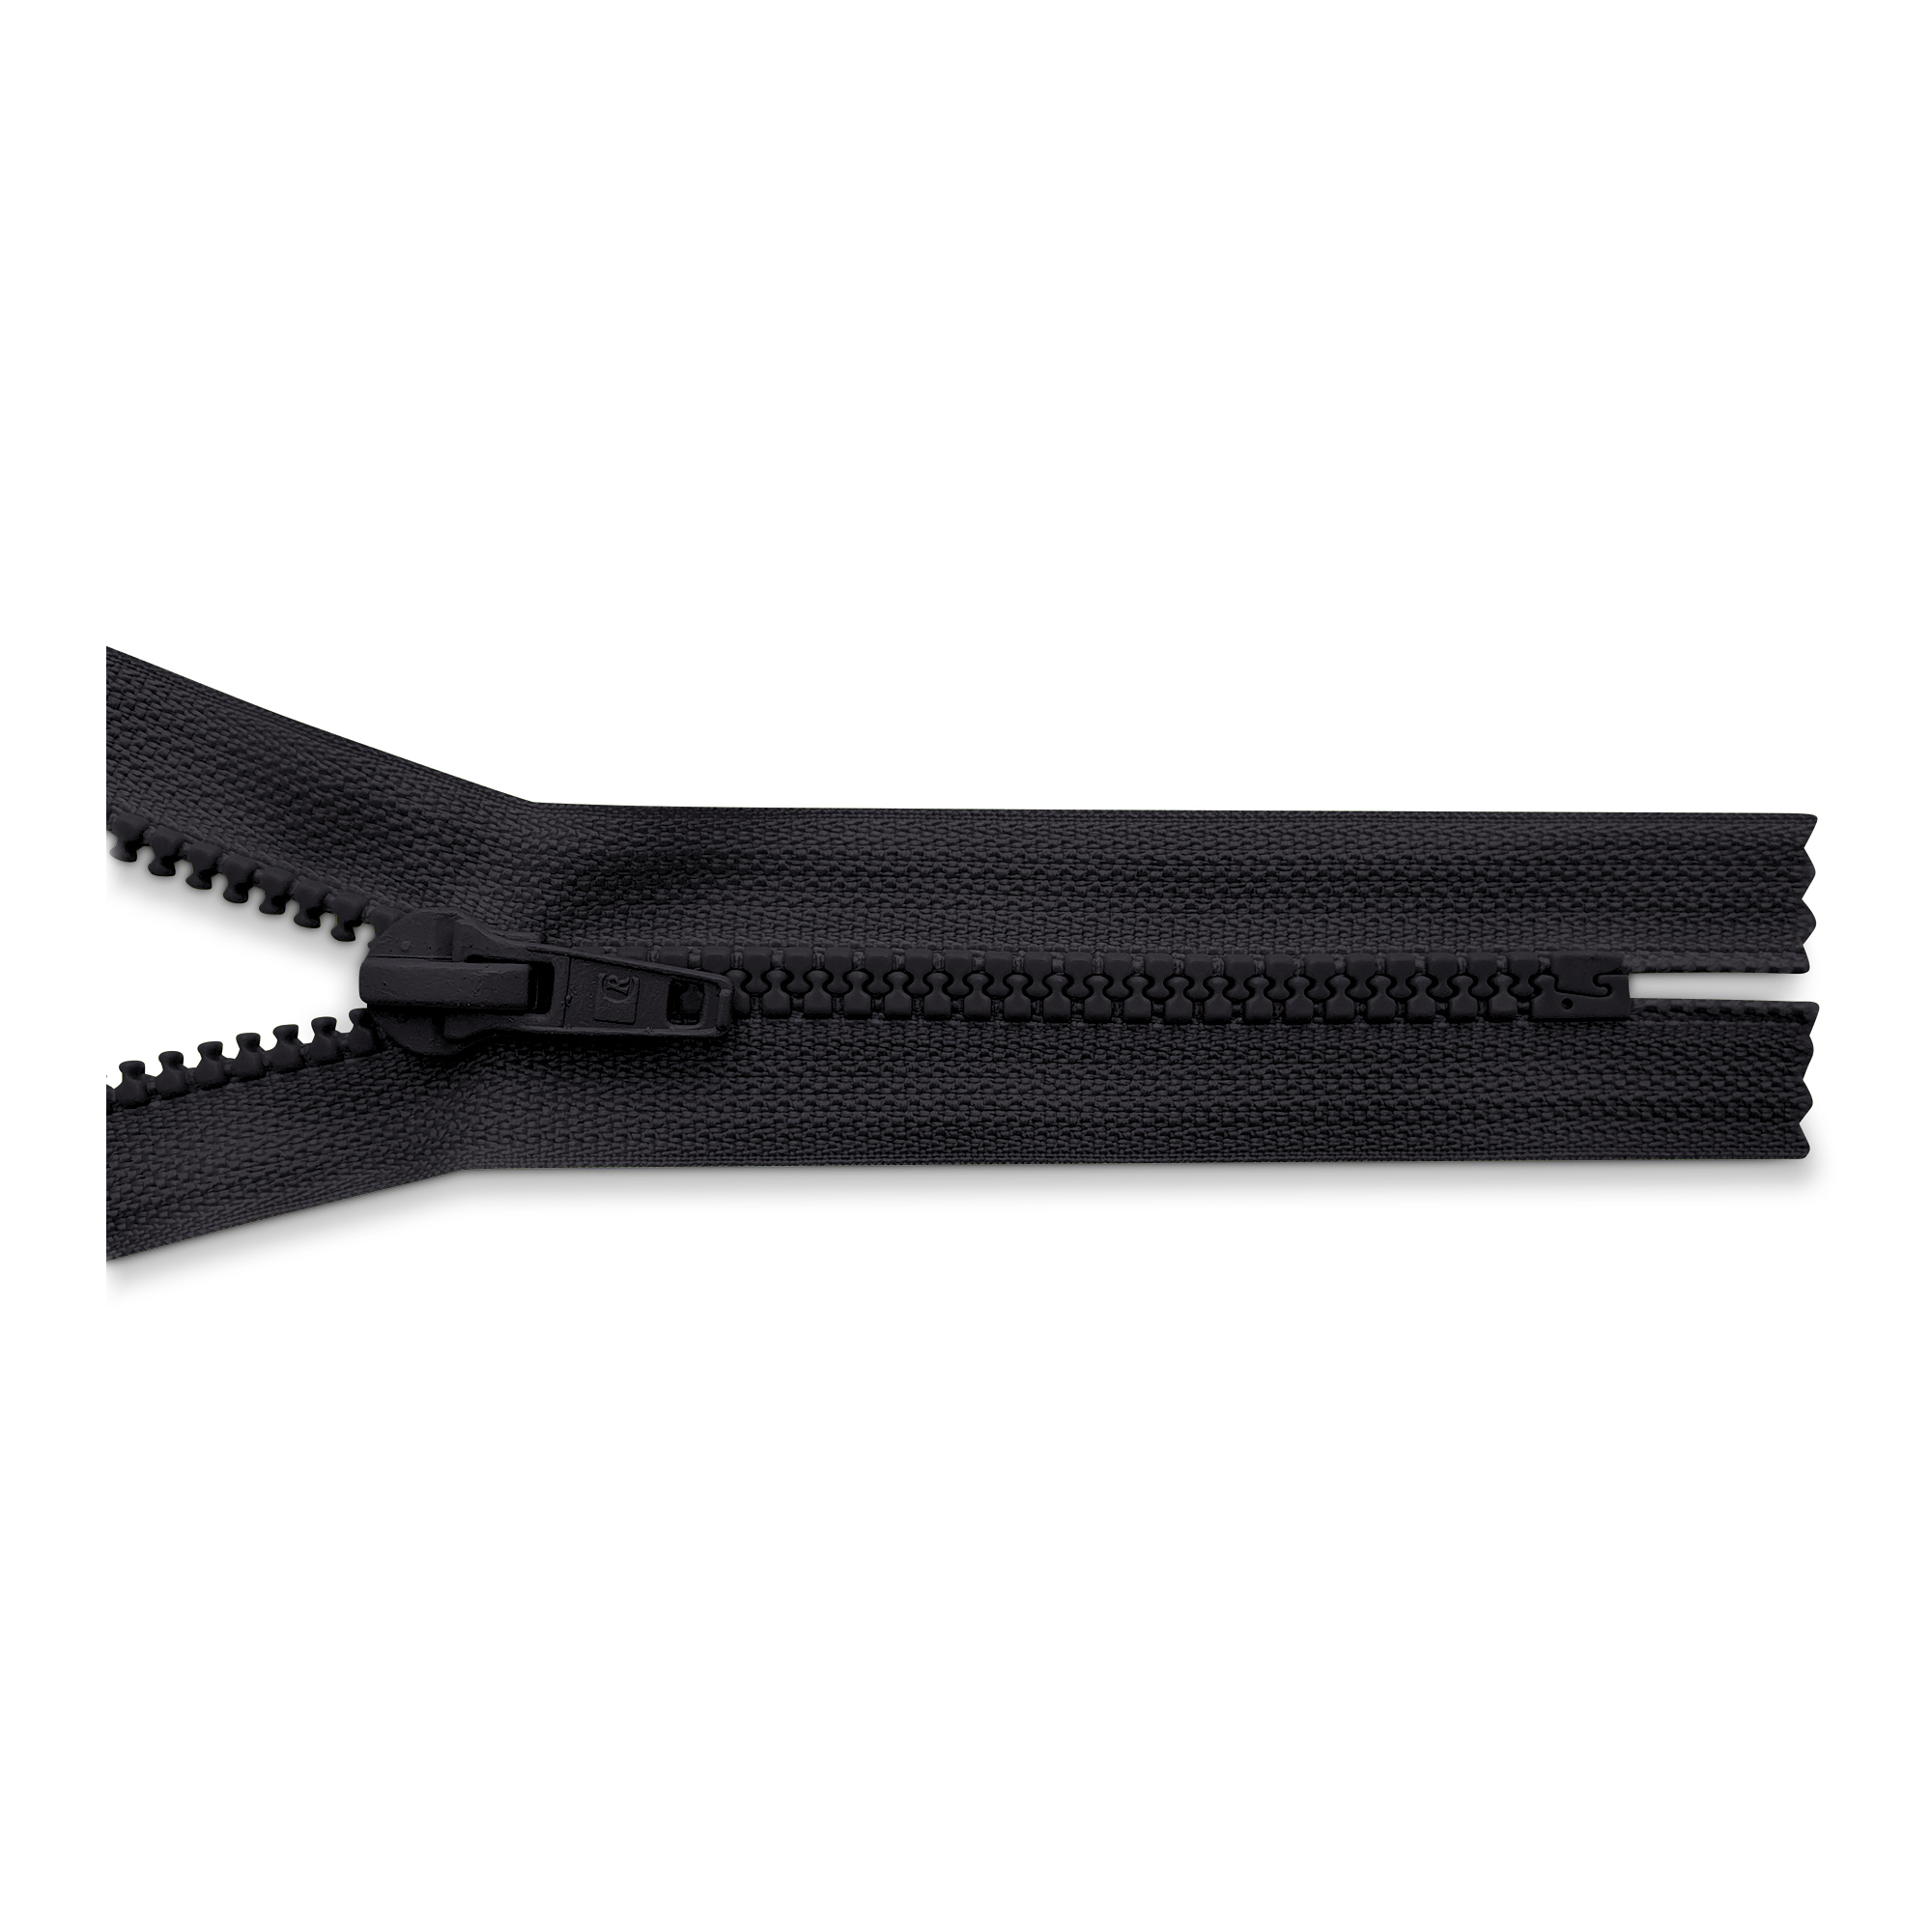 Reißverschluss 40cm, nicht teilbar, K.stoff Zähne breit, schwarz, hochwertiger Marken-Reißverschluss von Rubi/Barcelona